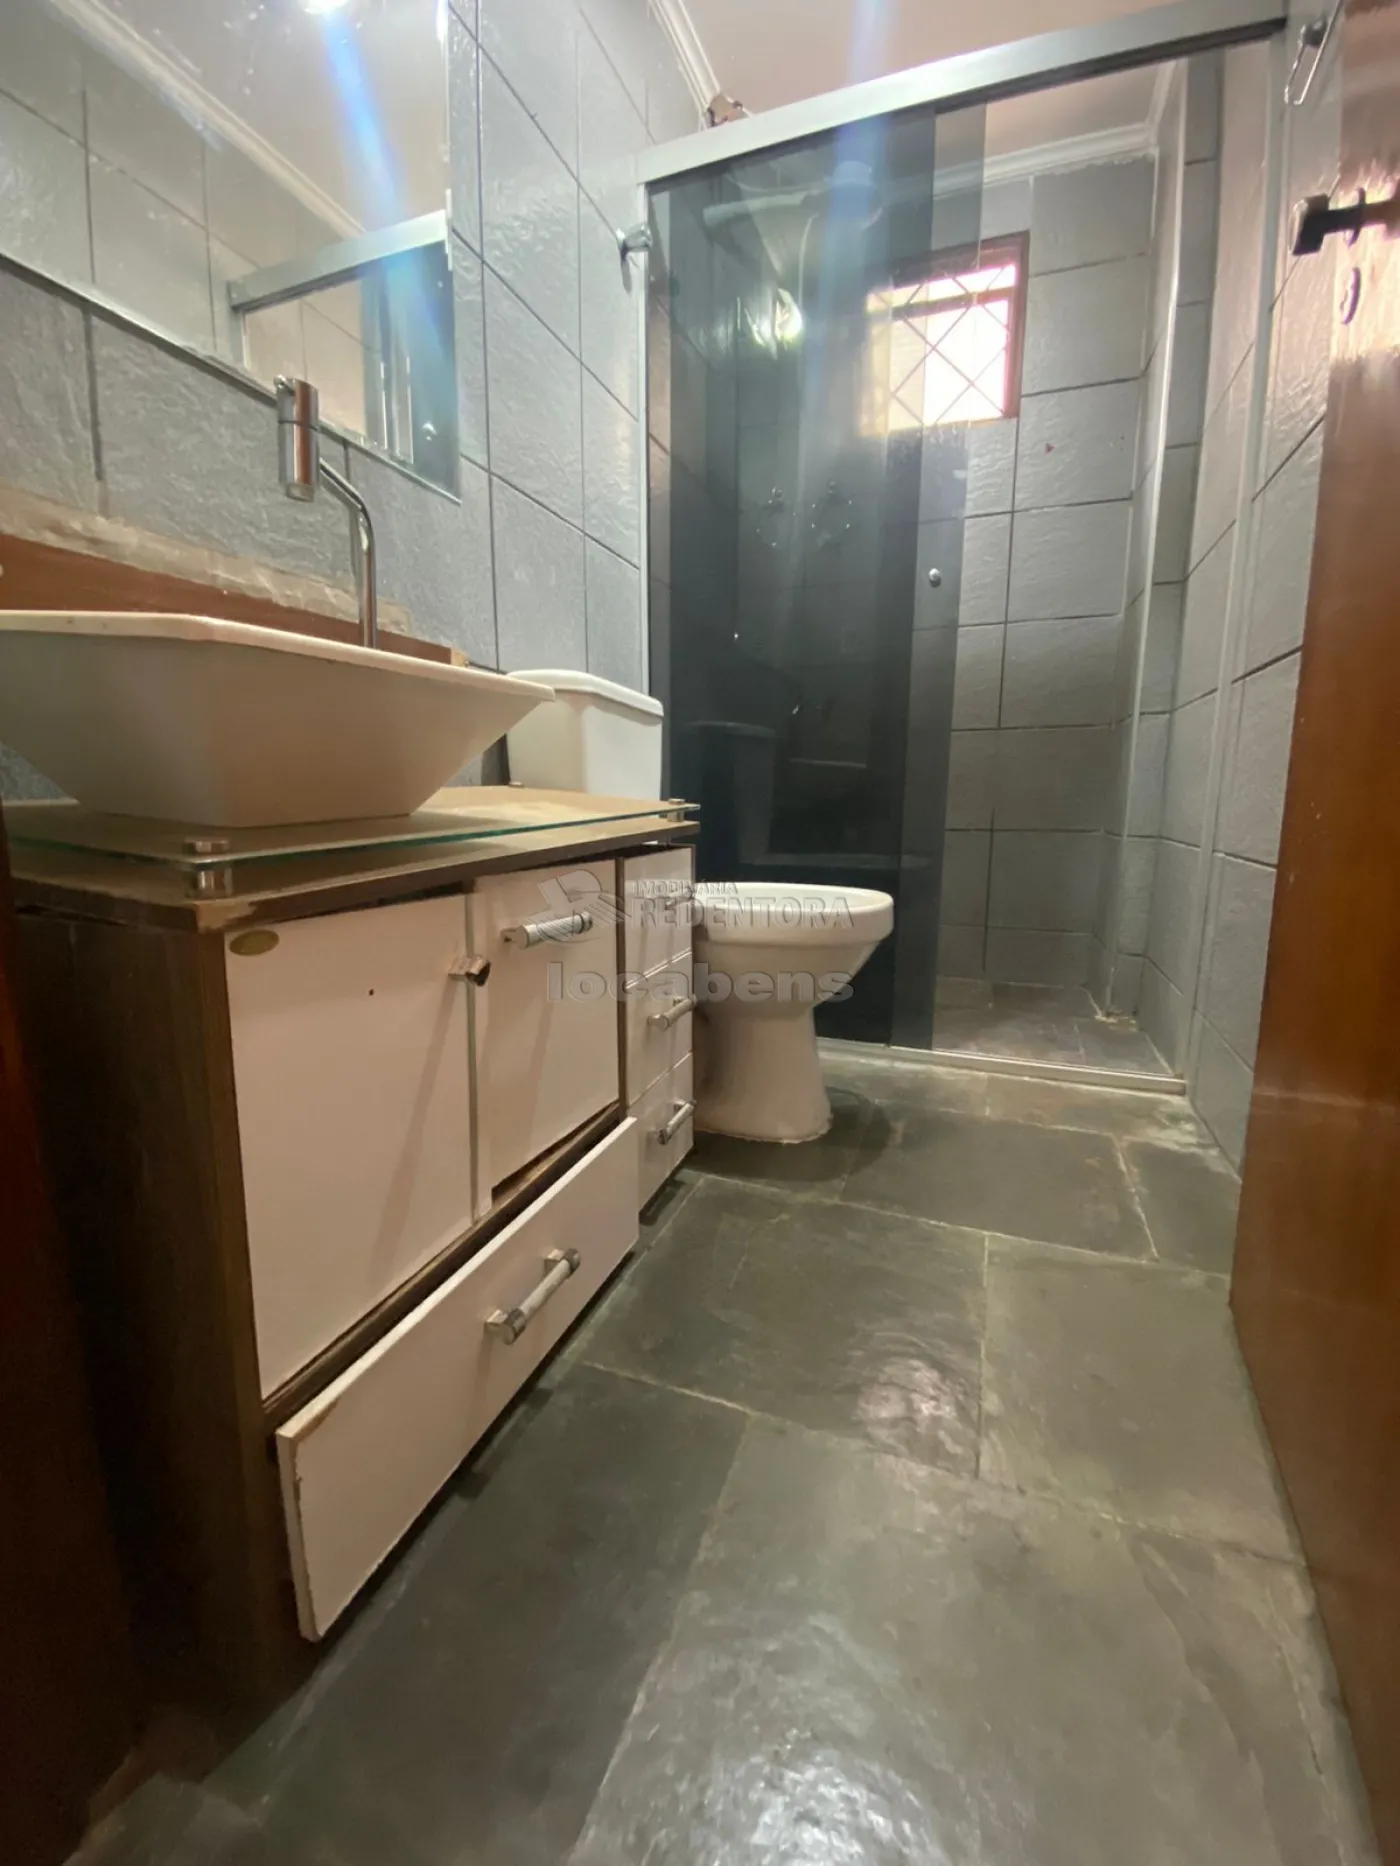 Alugar Apartamento / Padrão em São José do Rio Preto R$ 930,00 - Foto 4